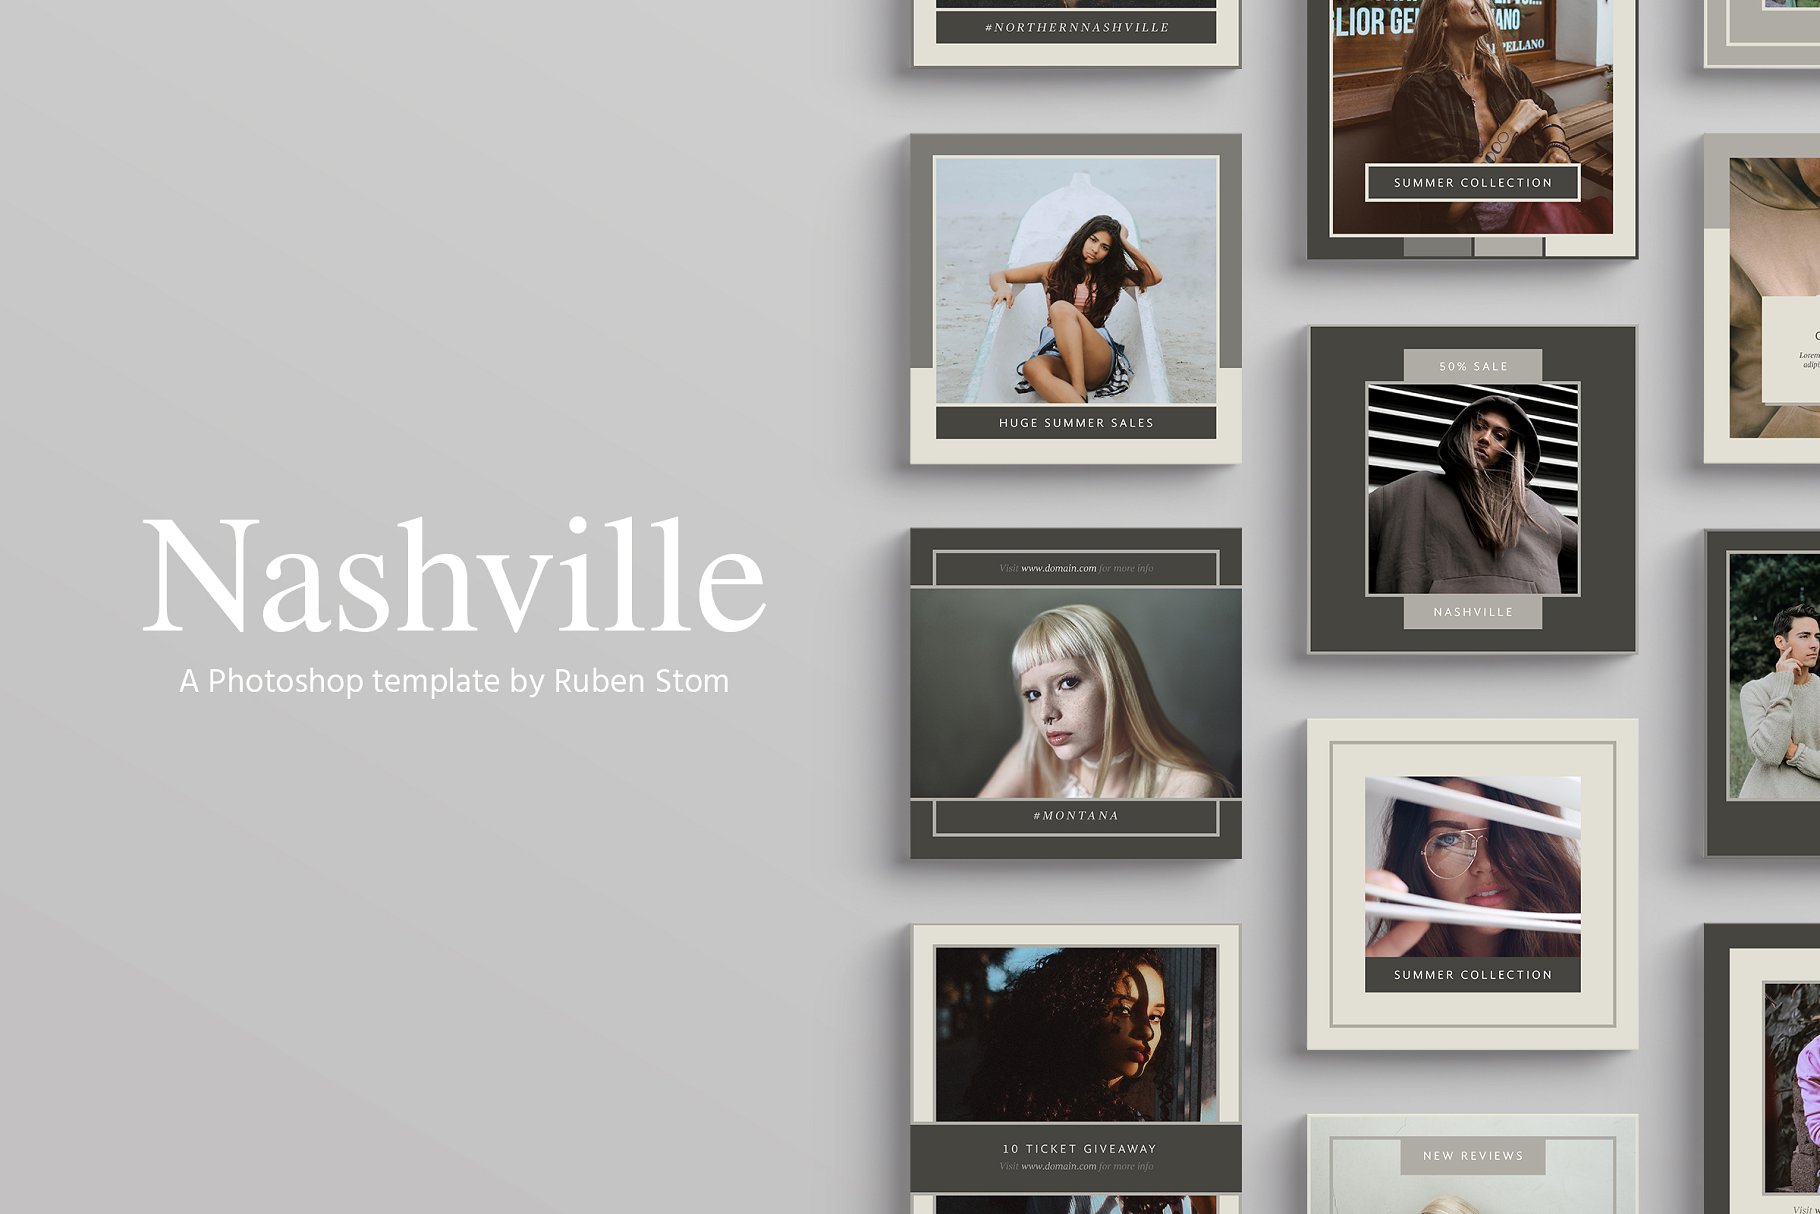 时尚模特摄影主题社交媒体贴图模板非凡图库精选 Nashville Social Media Templates插图